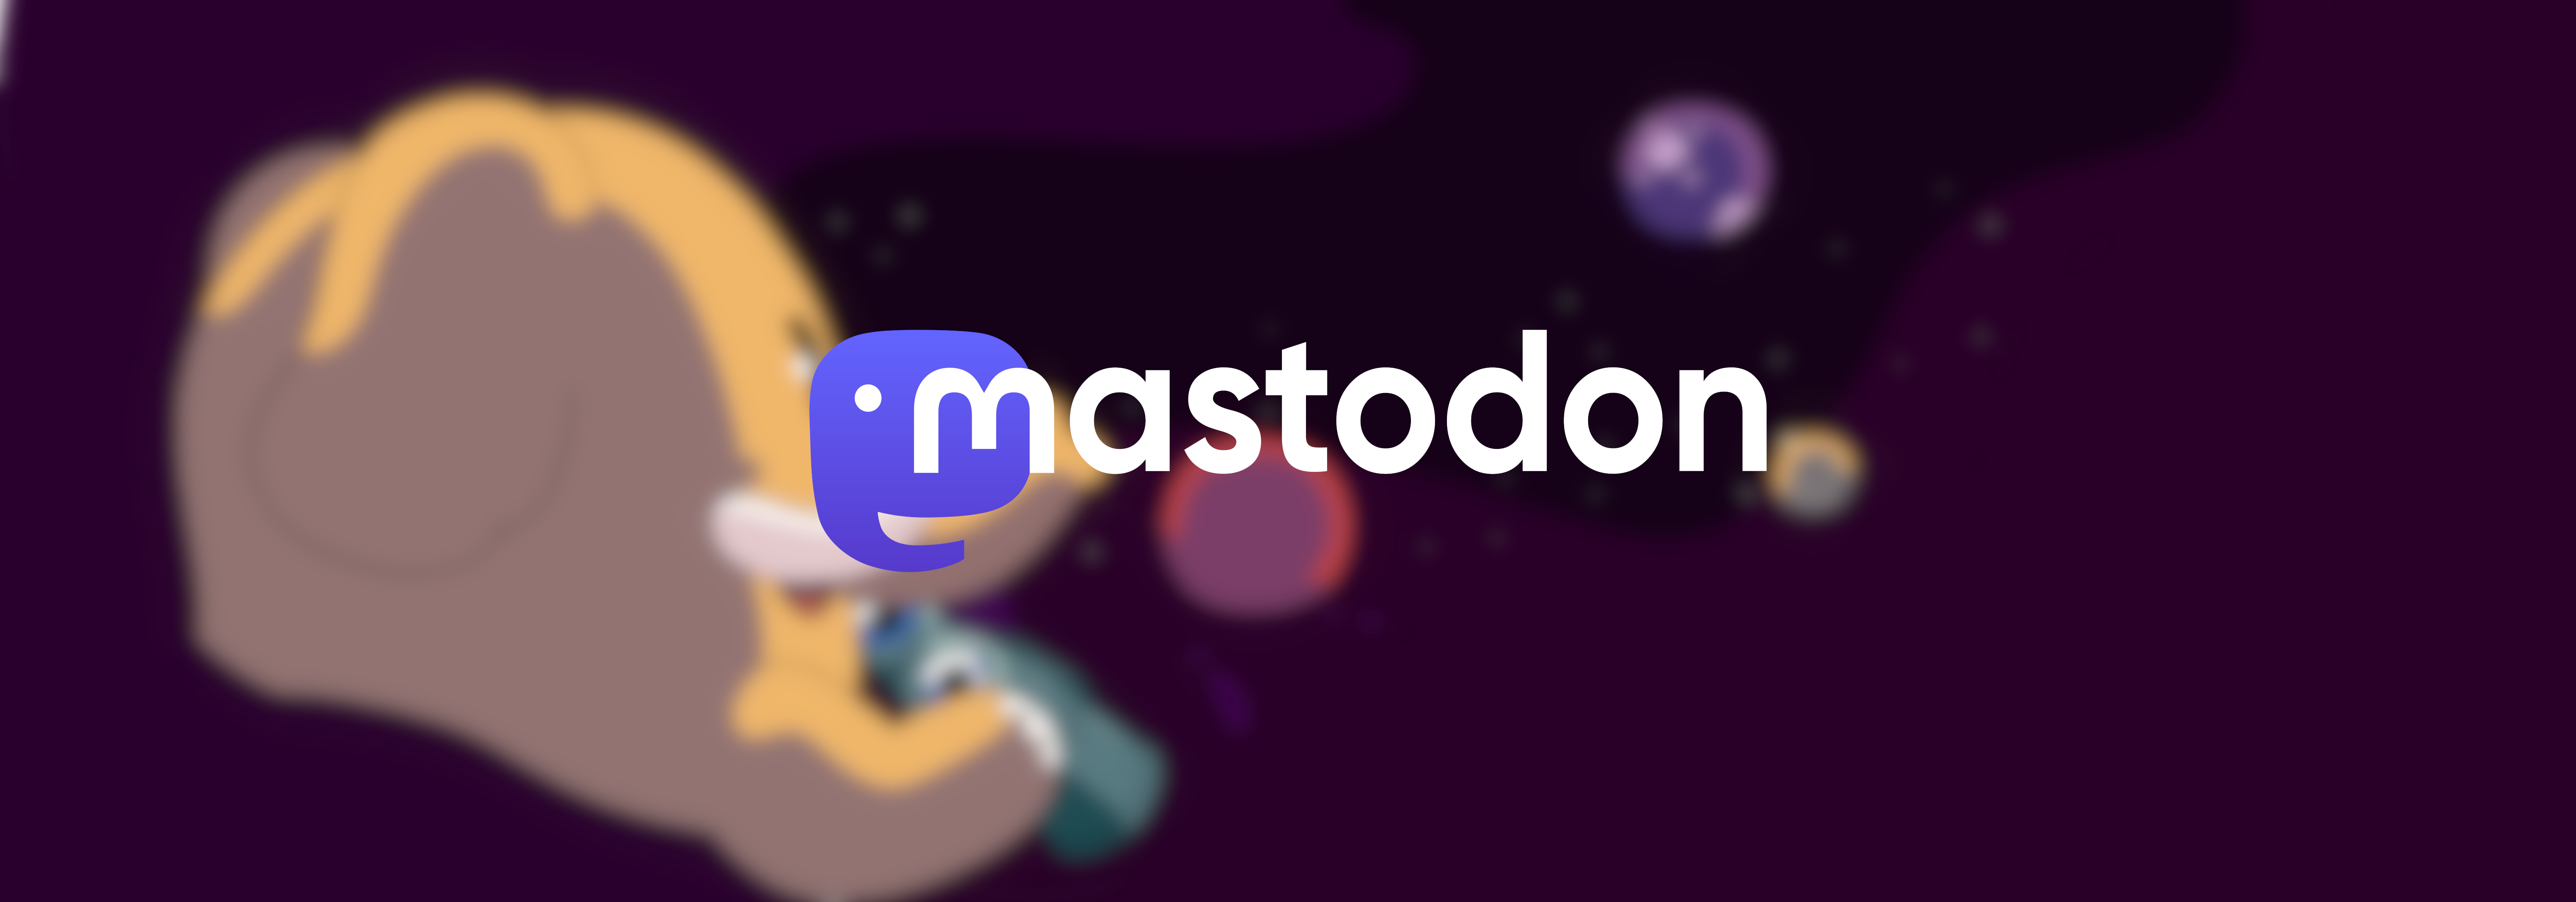 Mastodon Feature Image